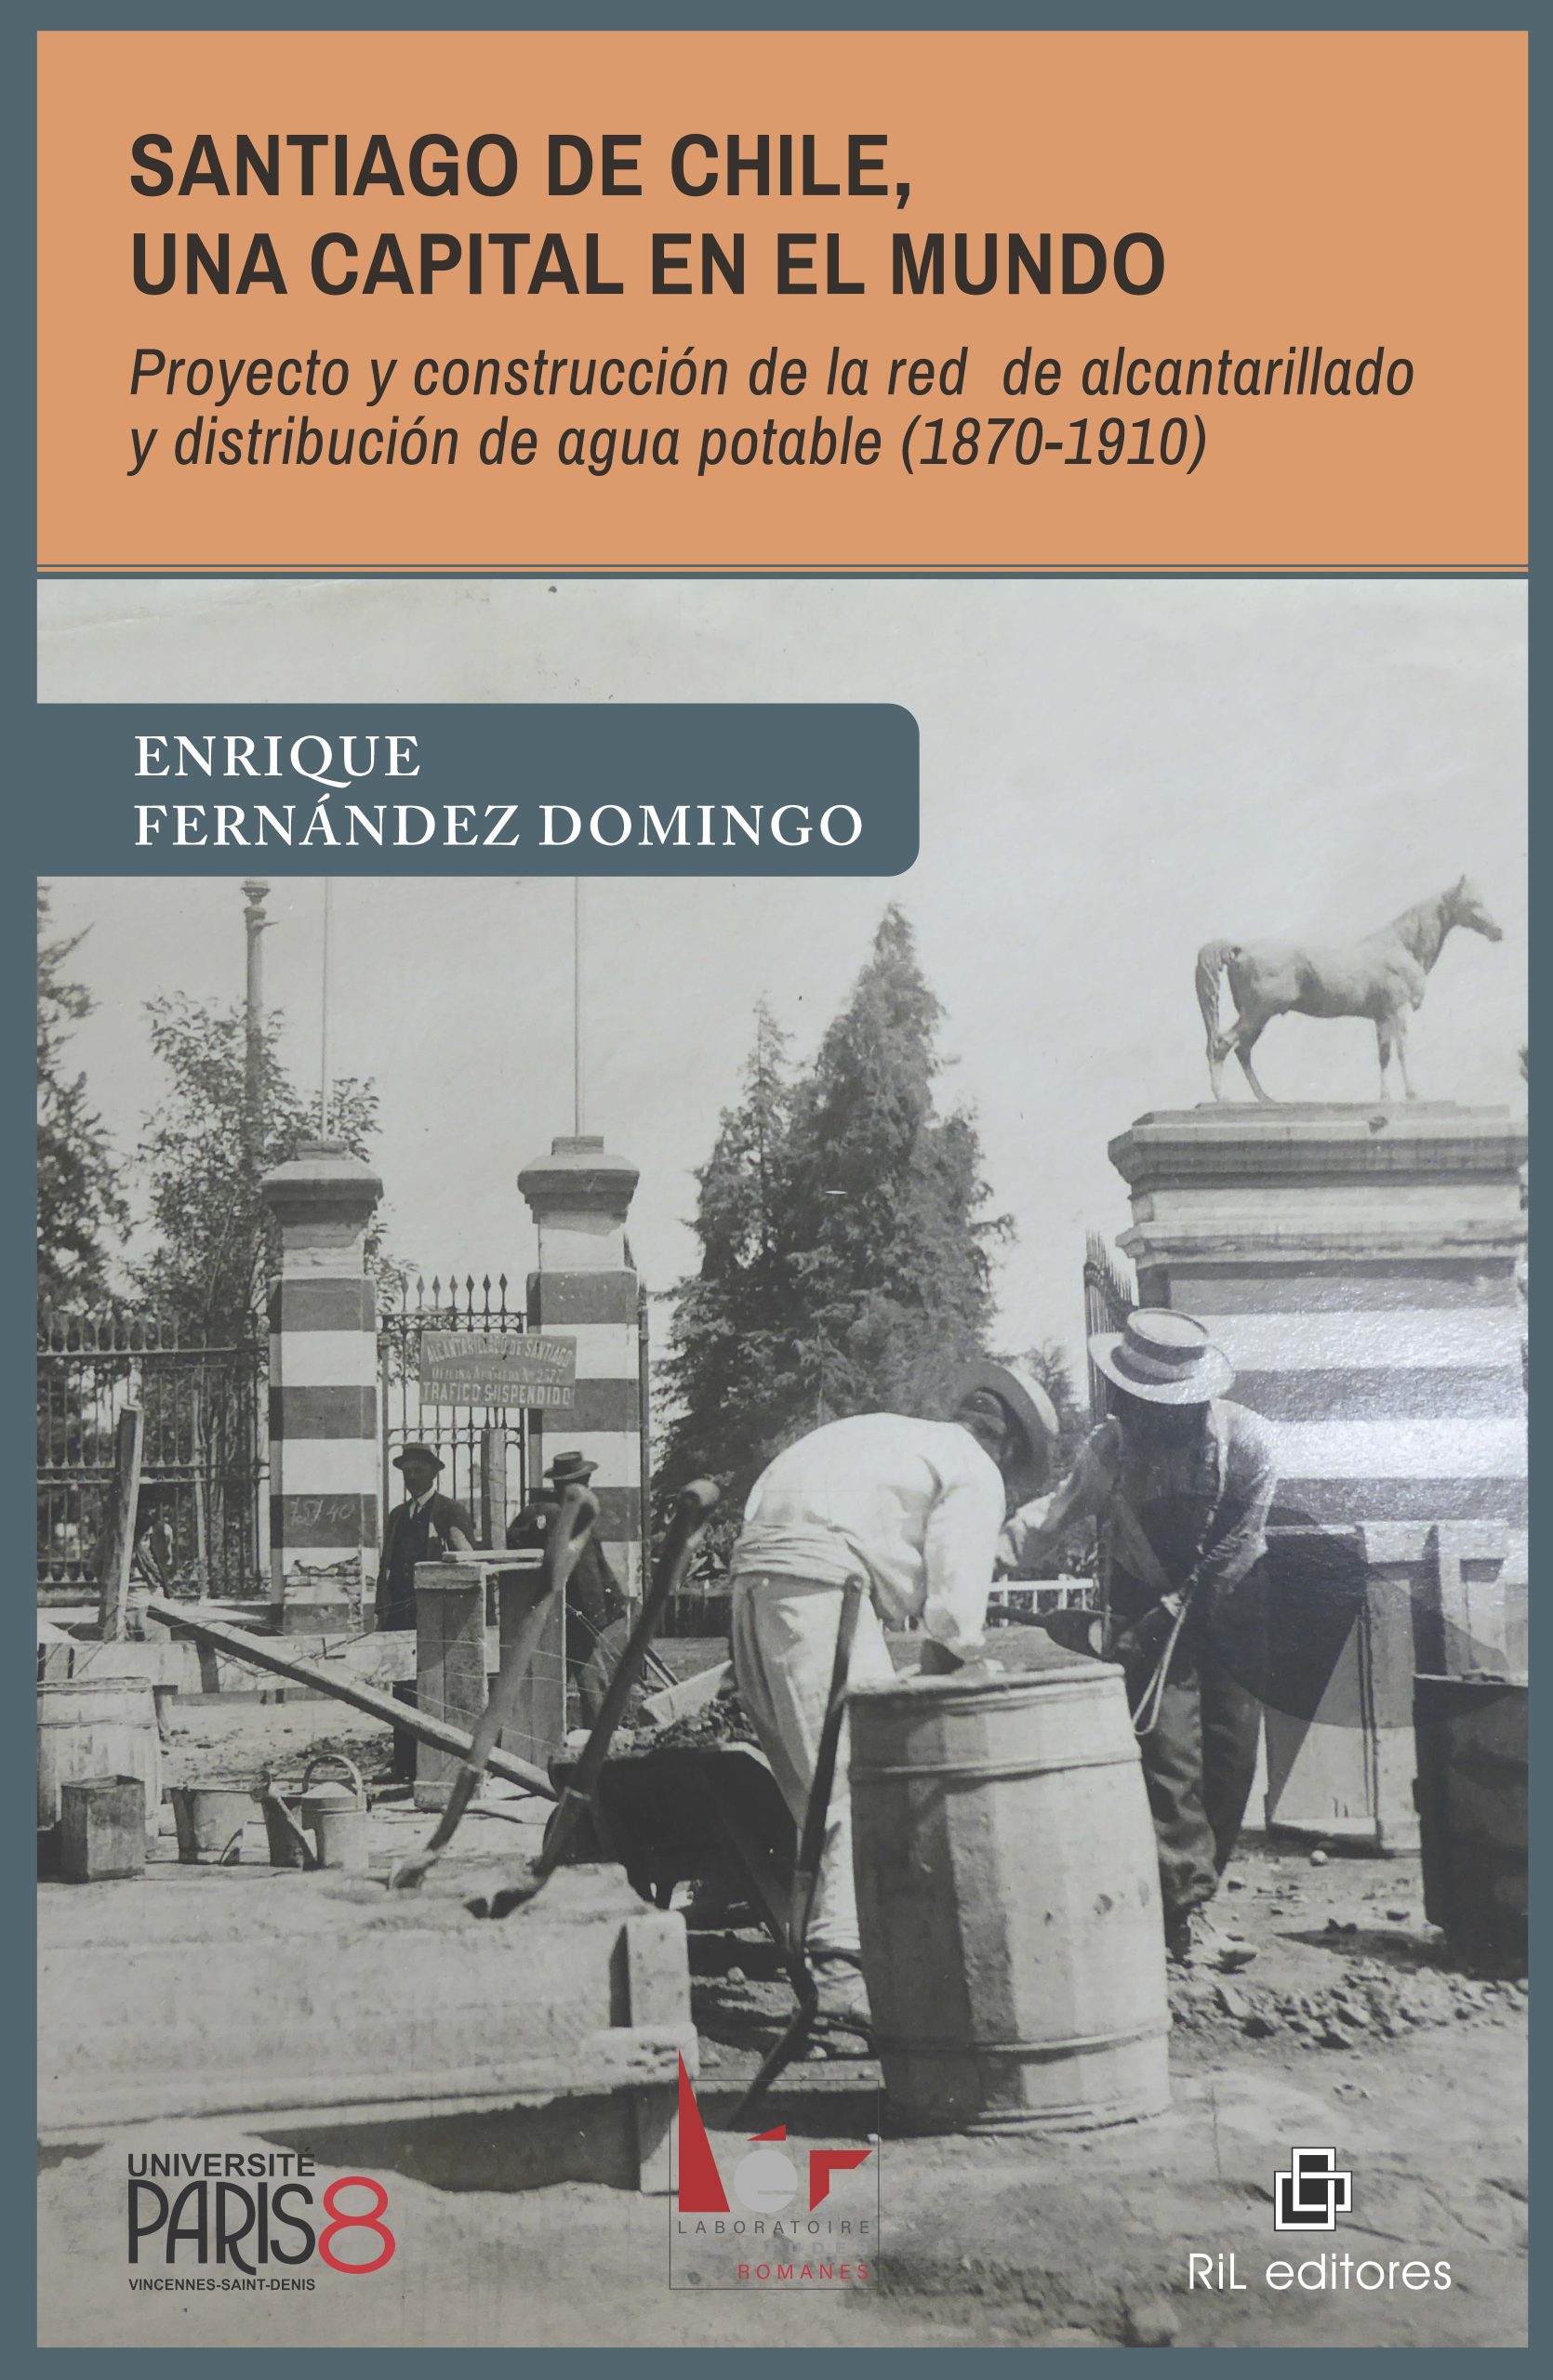 Santiago de Chile, una capital en el mundo. Proyecto y construcción de la red de alcantarillado y distribución de agua potable (1870-1910) 1